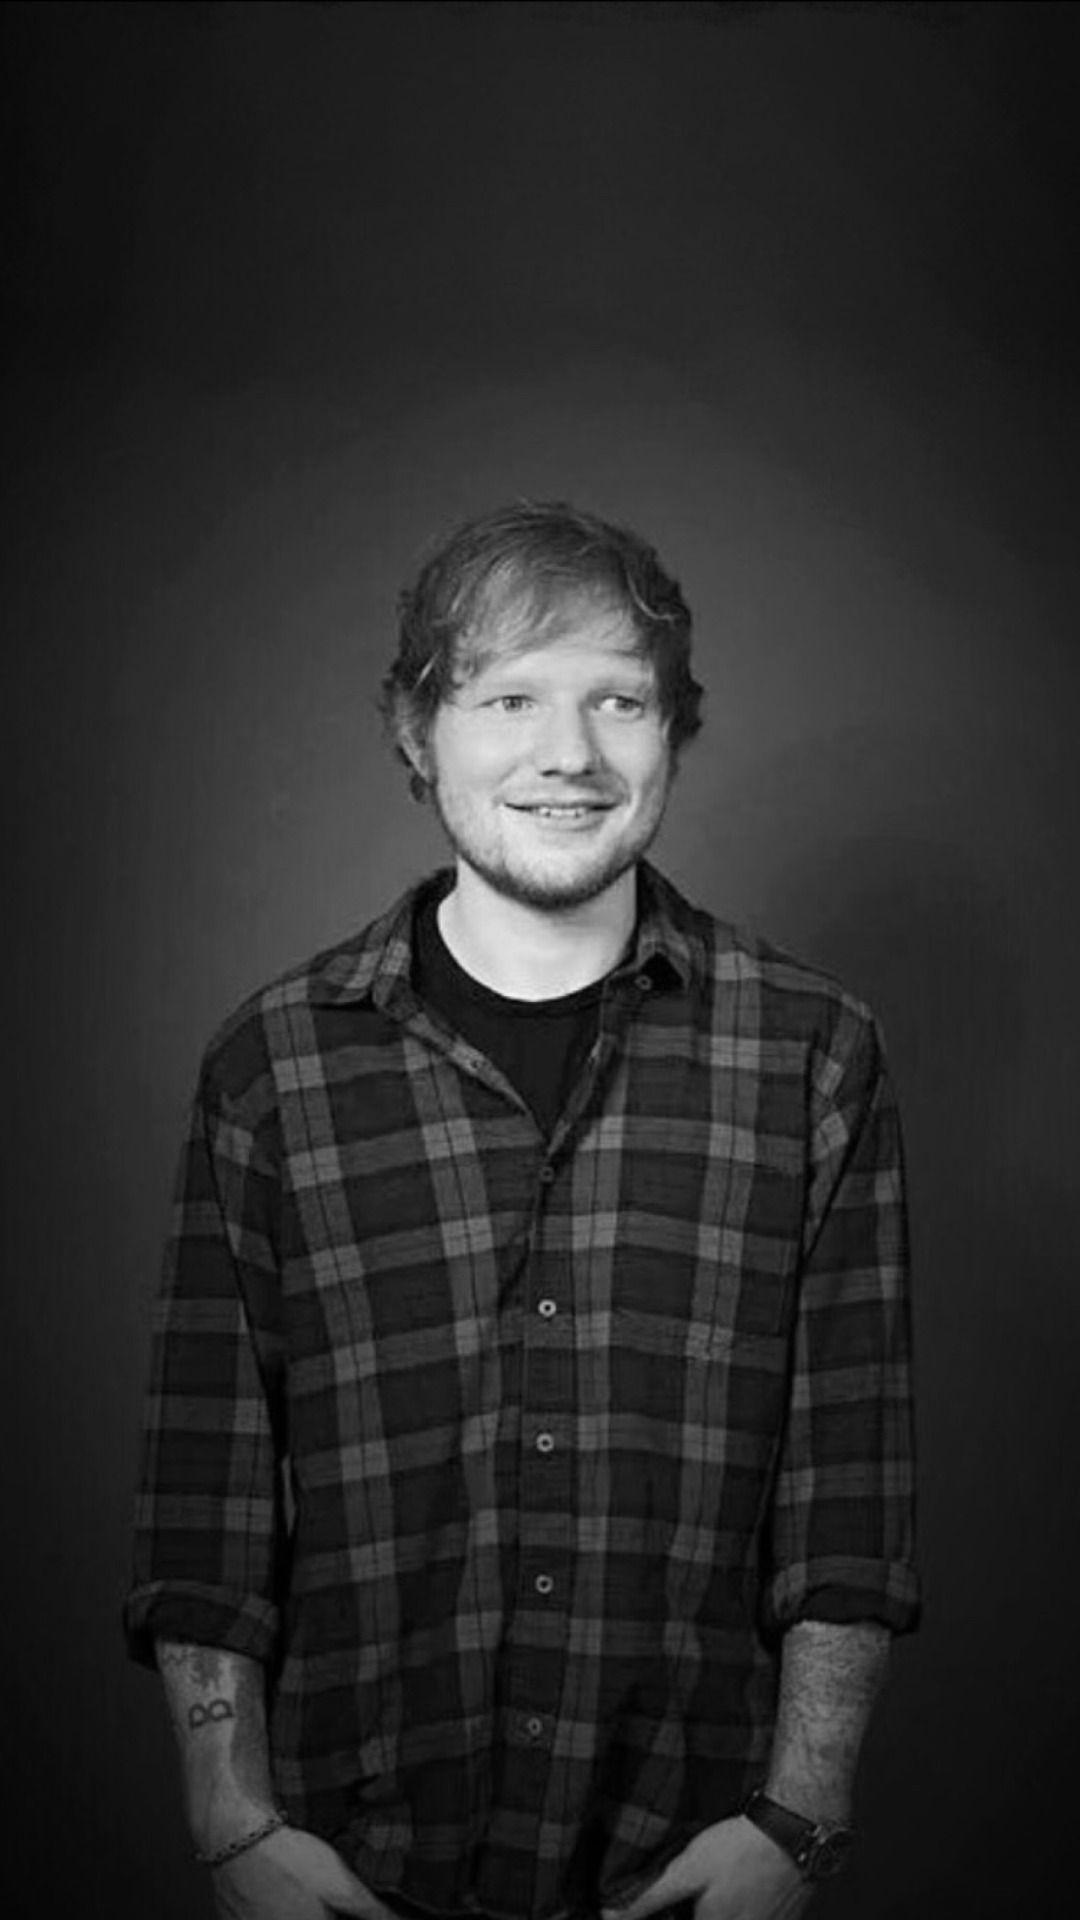 Ed Sheeran Mobile Wallpapers - Wallpaper Cave